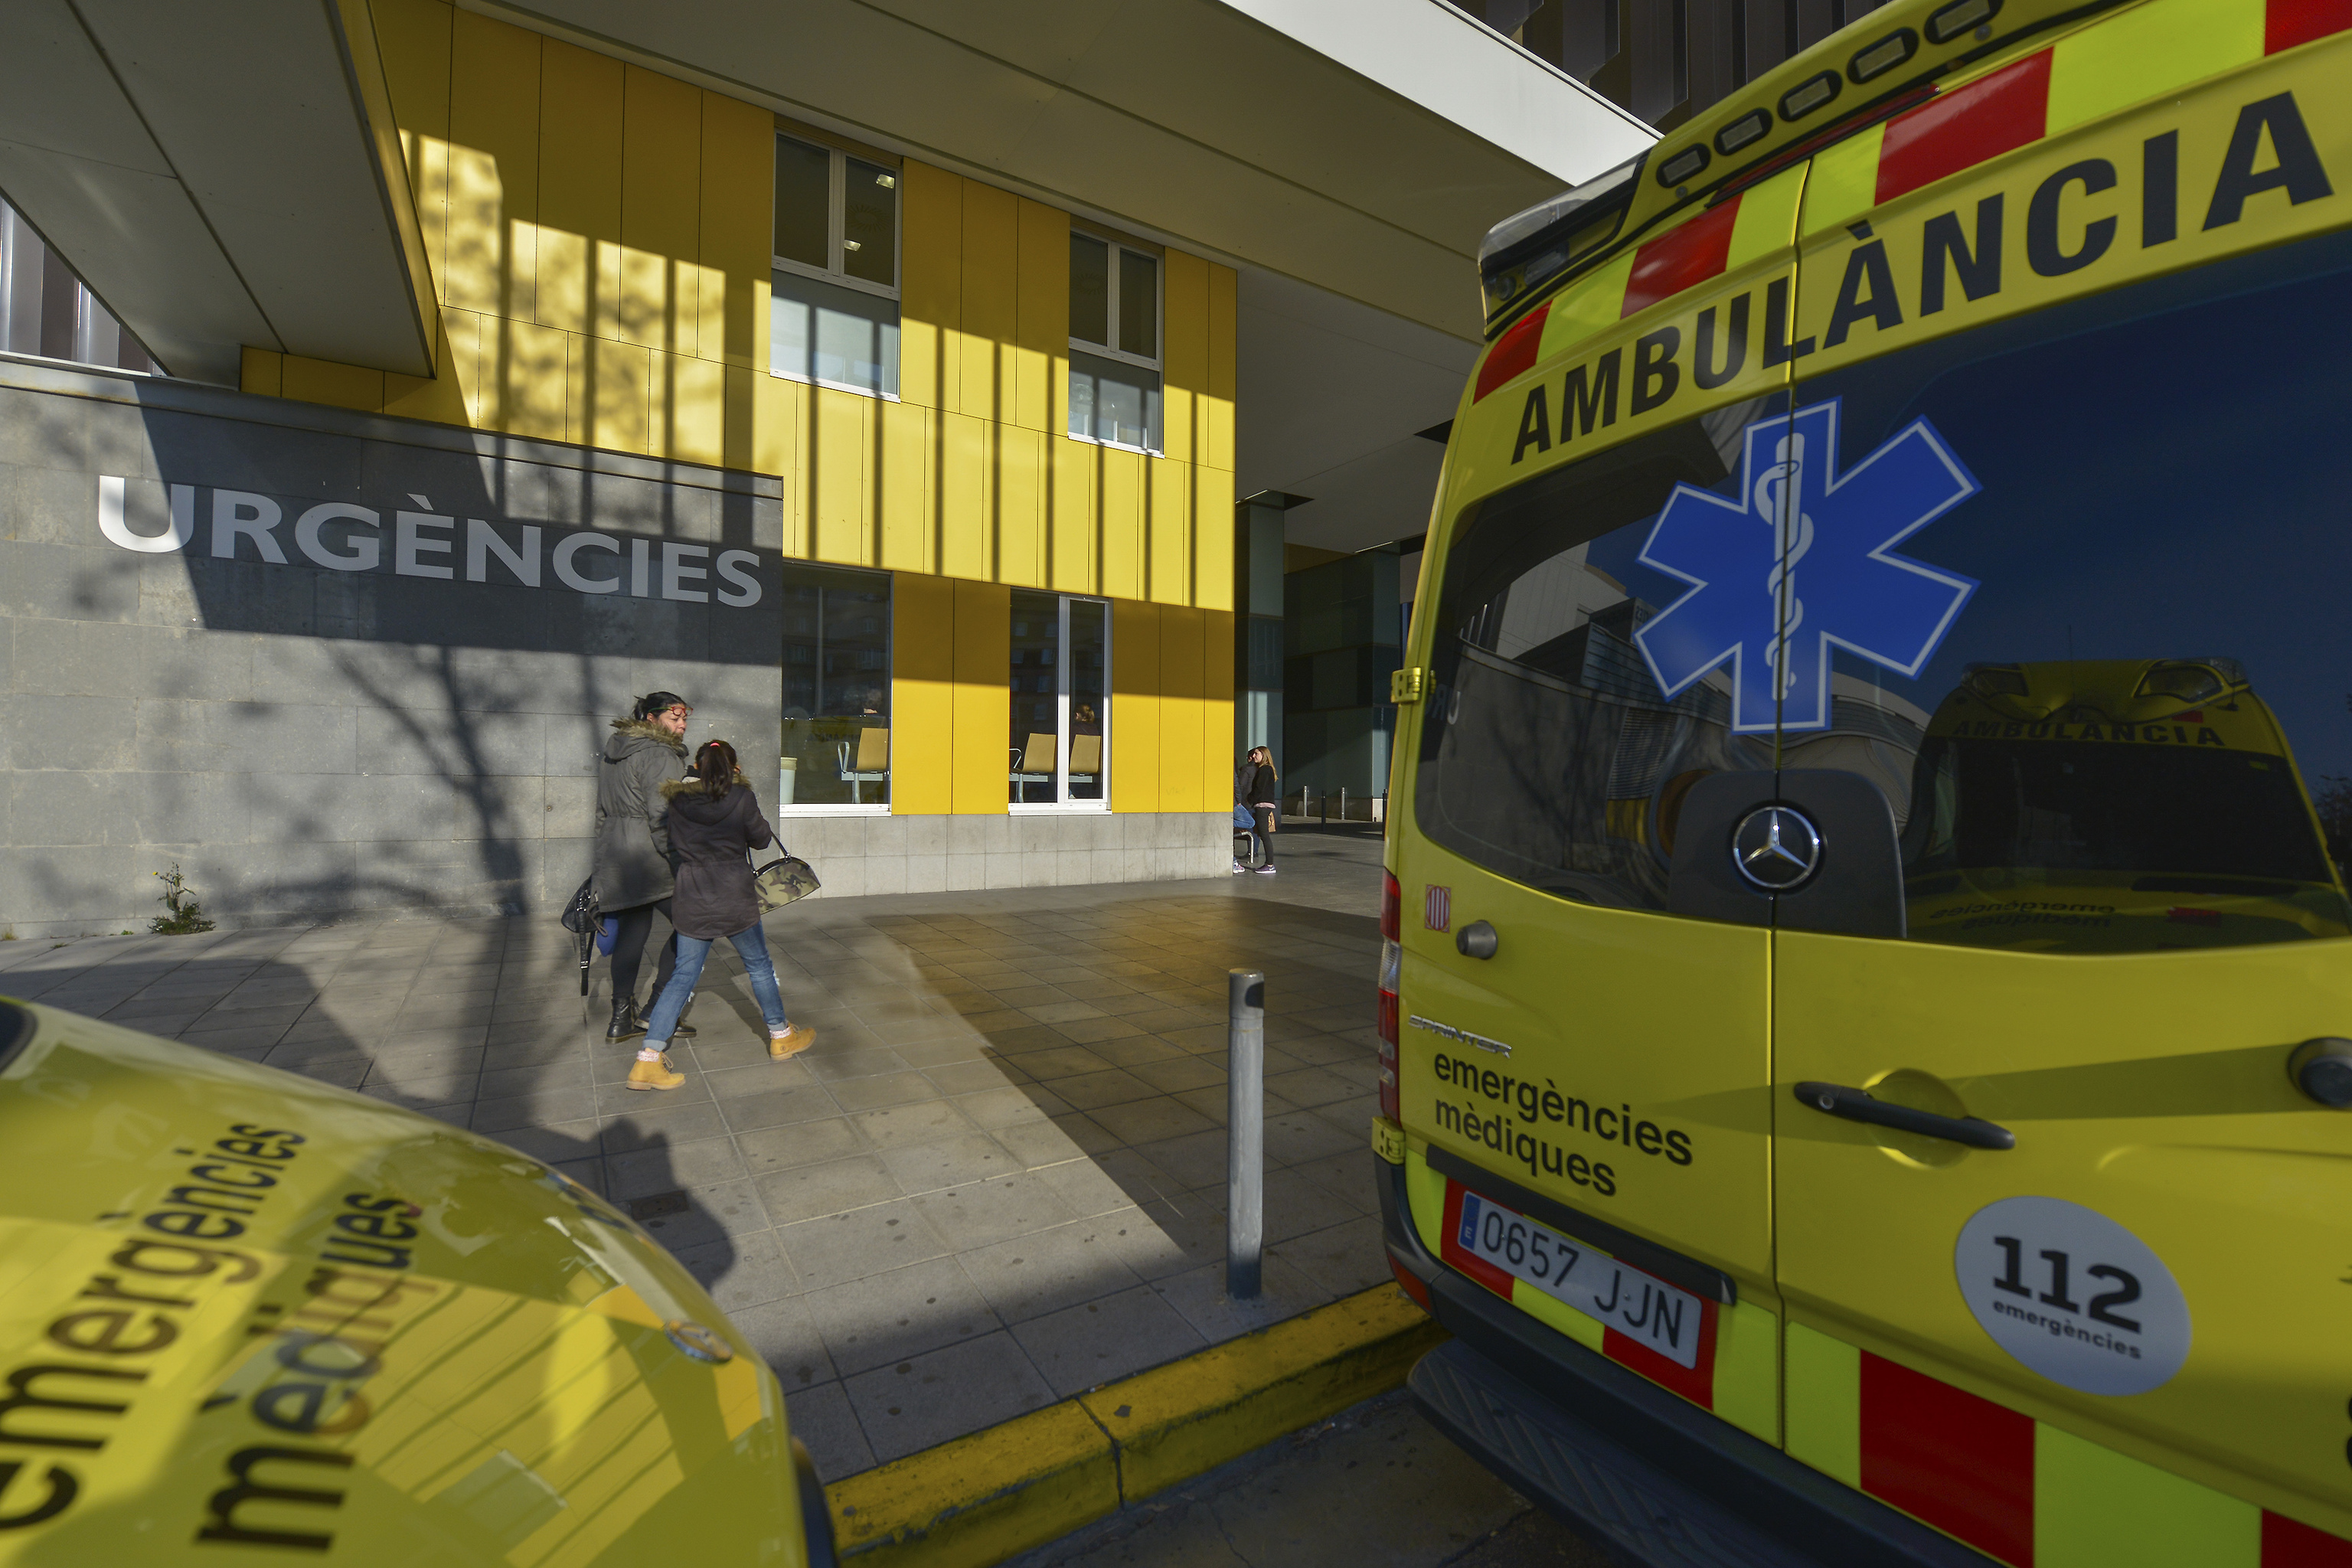 Una ambulancia en imagen de archivo.